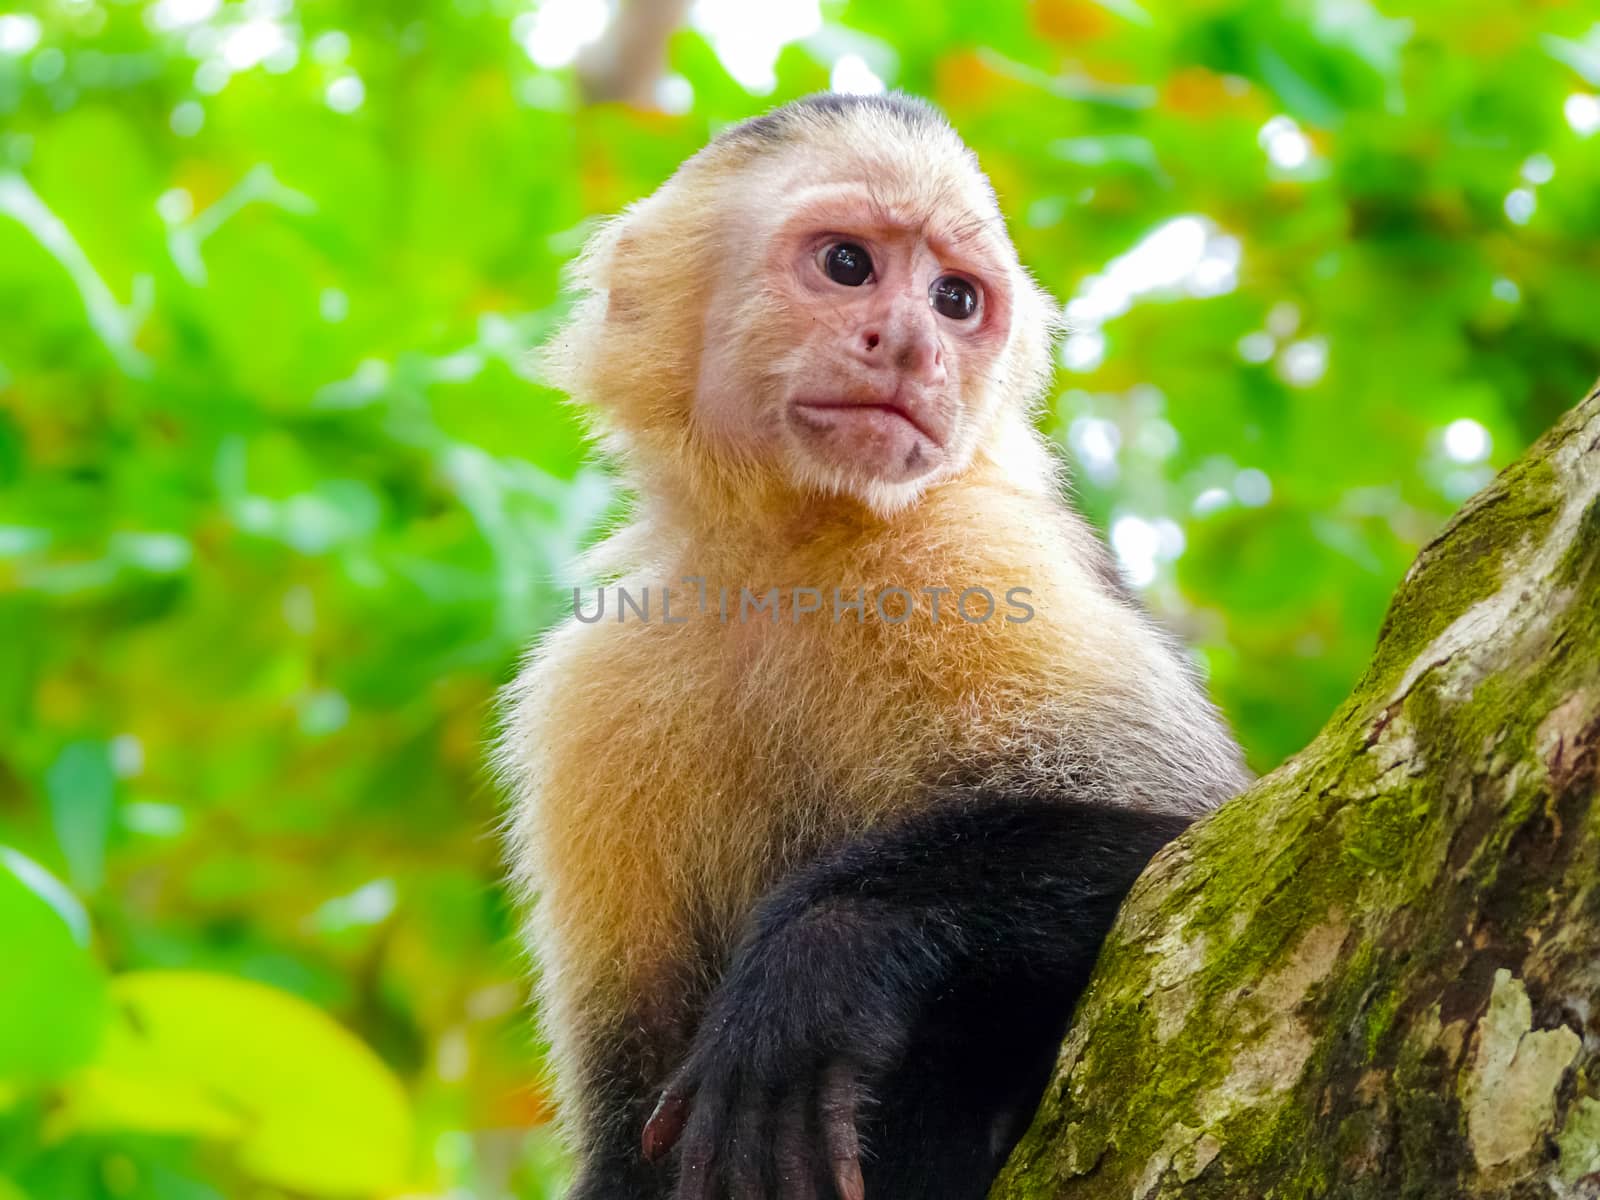 White-faced capuchin monkey, Manuel Antonio National Park by nicousnake